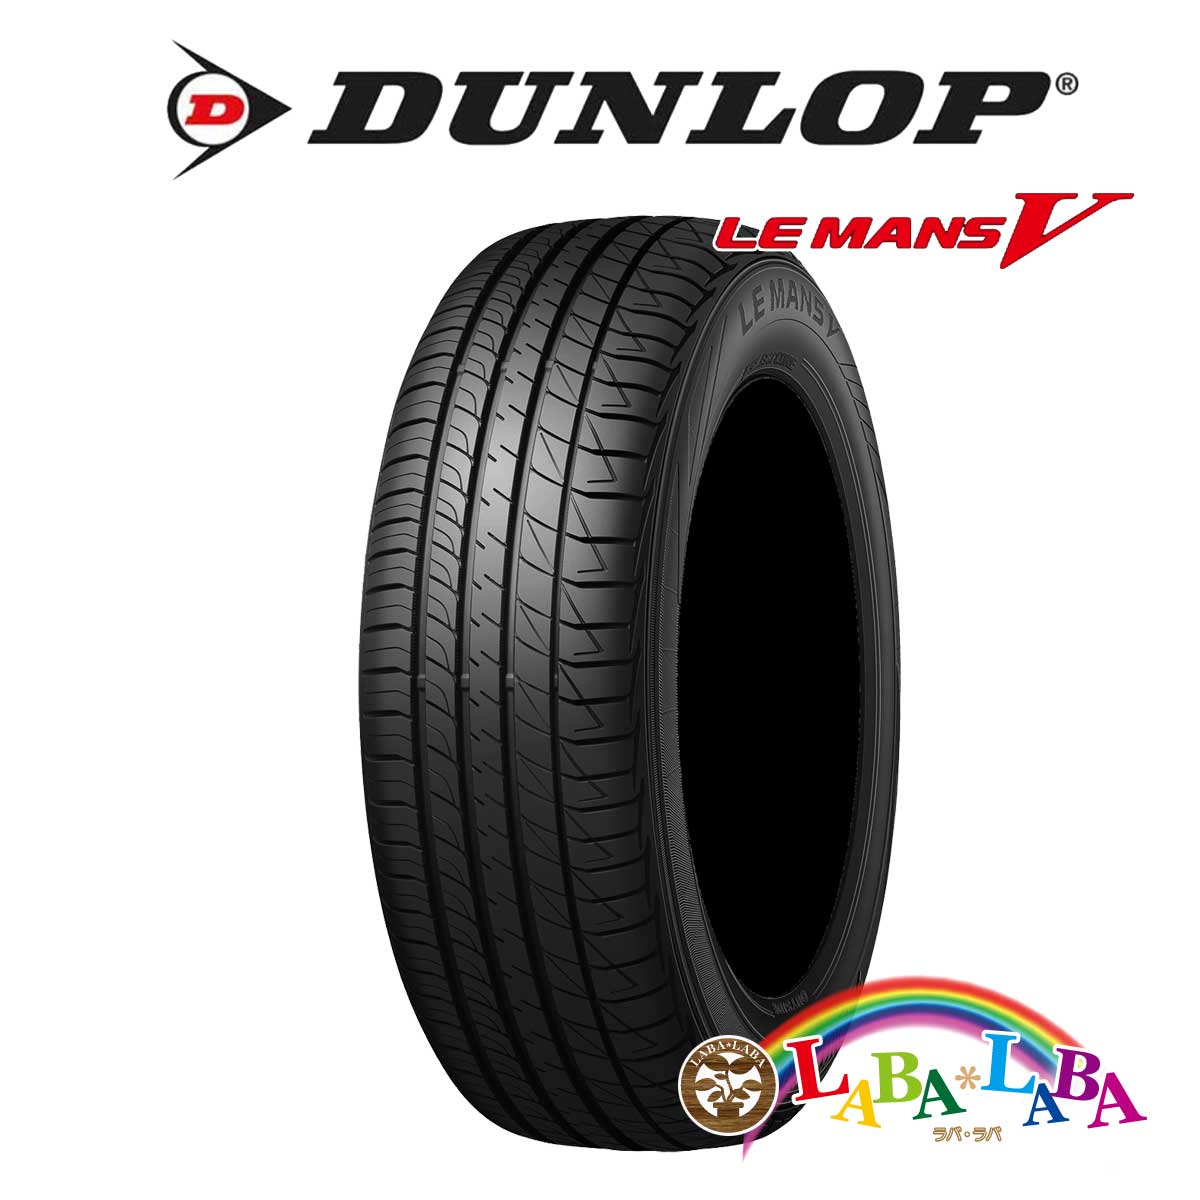 ２本以上送料無料 国産タイヤ サマータイヤ 新品 タイヤのみ DUNLOP 新着商品 ダンロップ 在庫限り ルマン 60R16 LE LM5 MANSV 92H 205